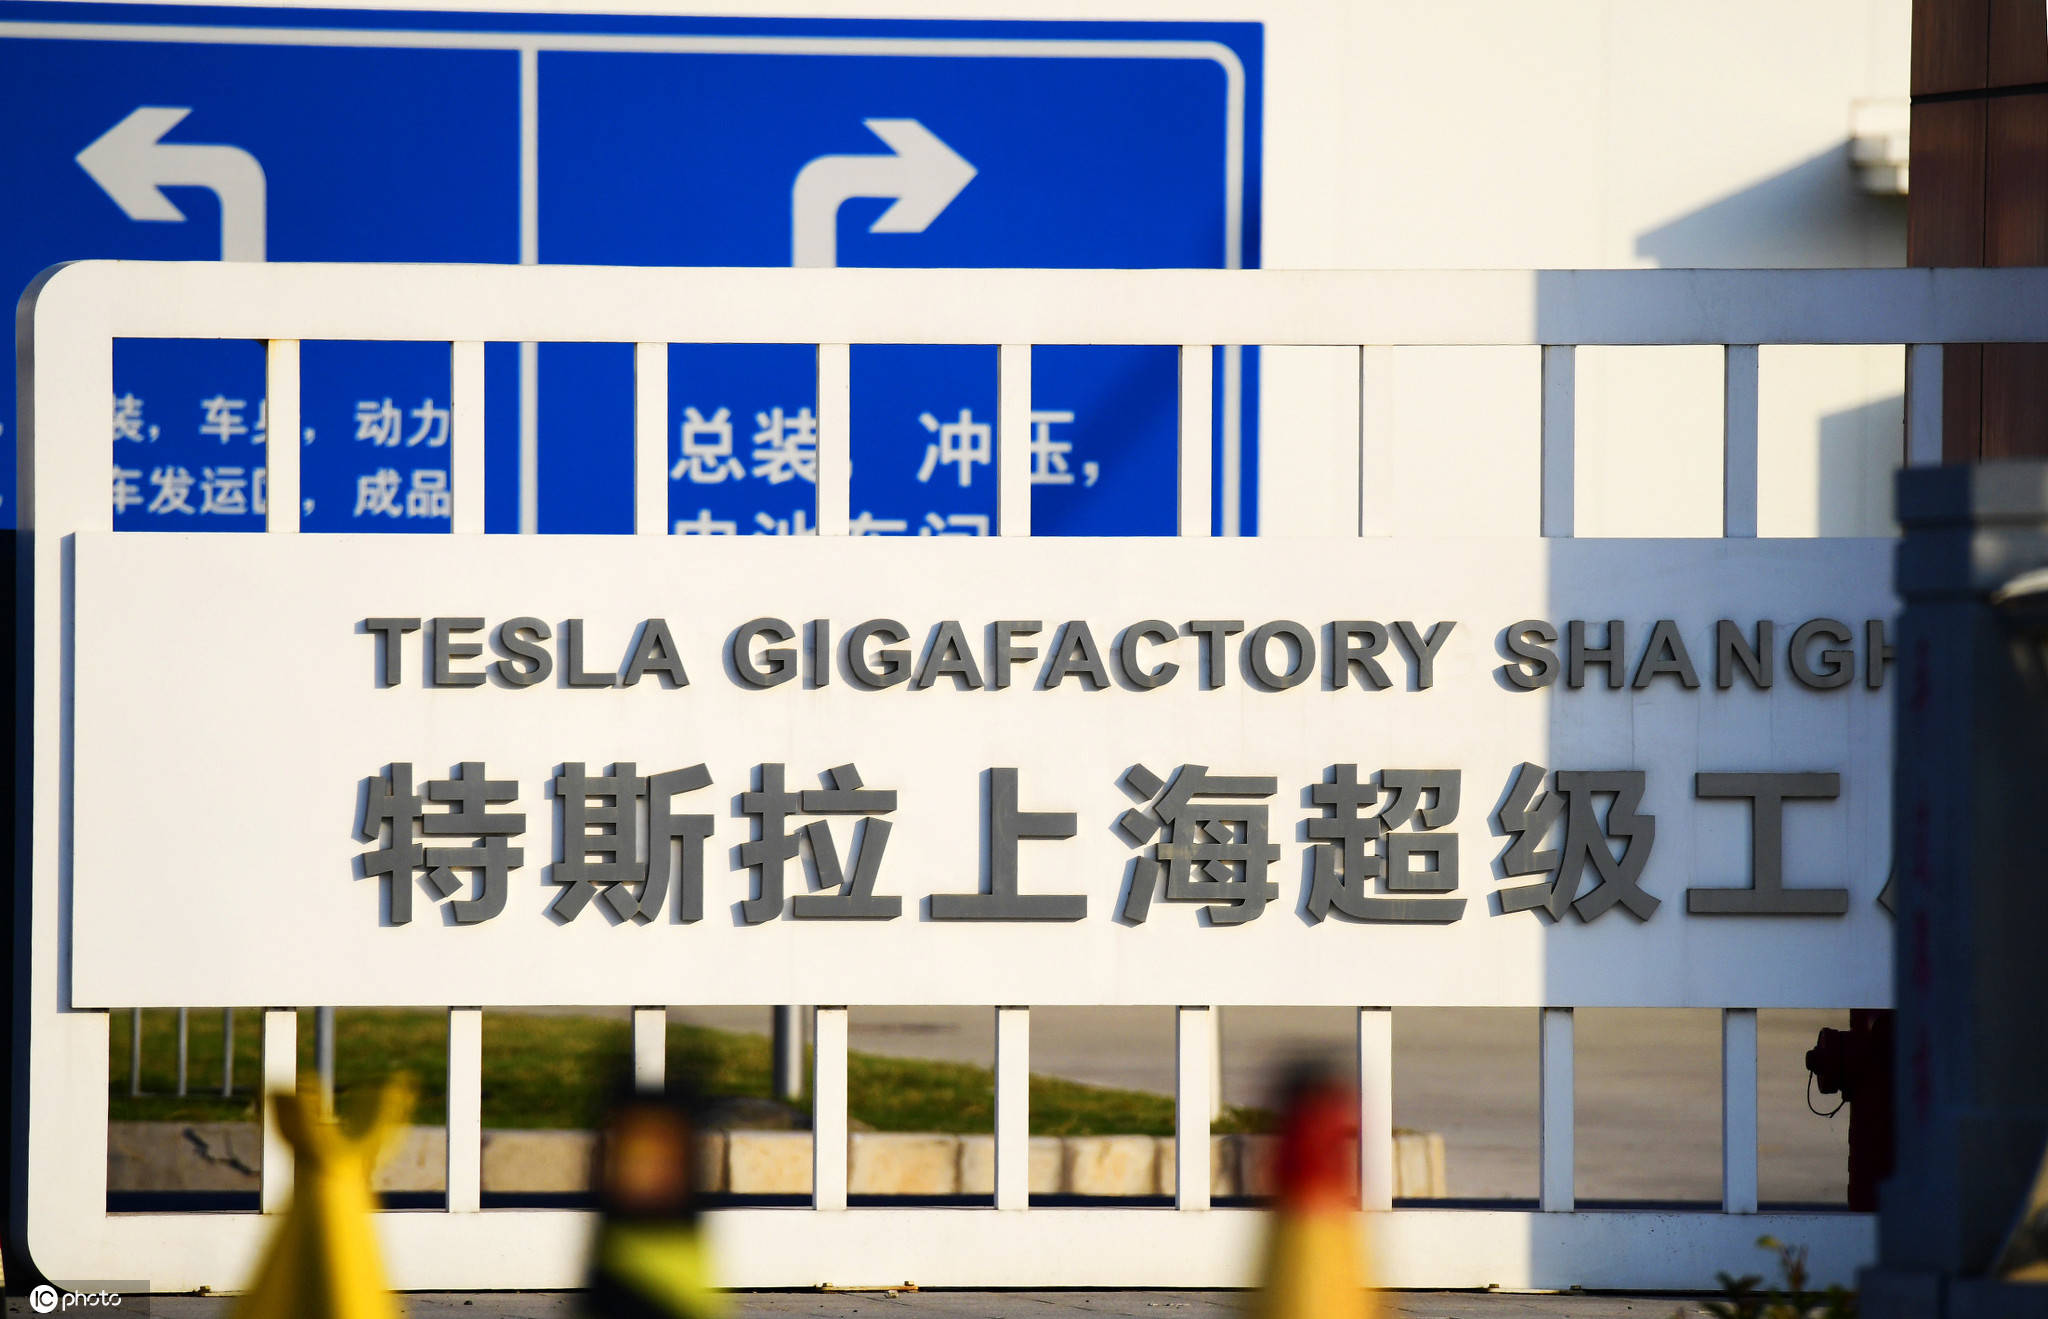 特斯拉二期工厂基本完工新增"特斯拉上海超级工厂"中文标识醒目